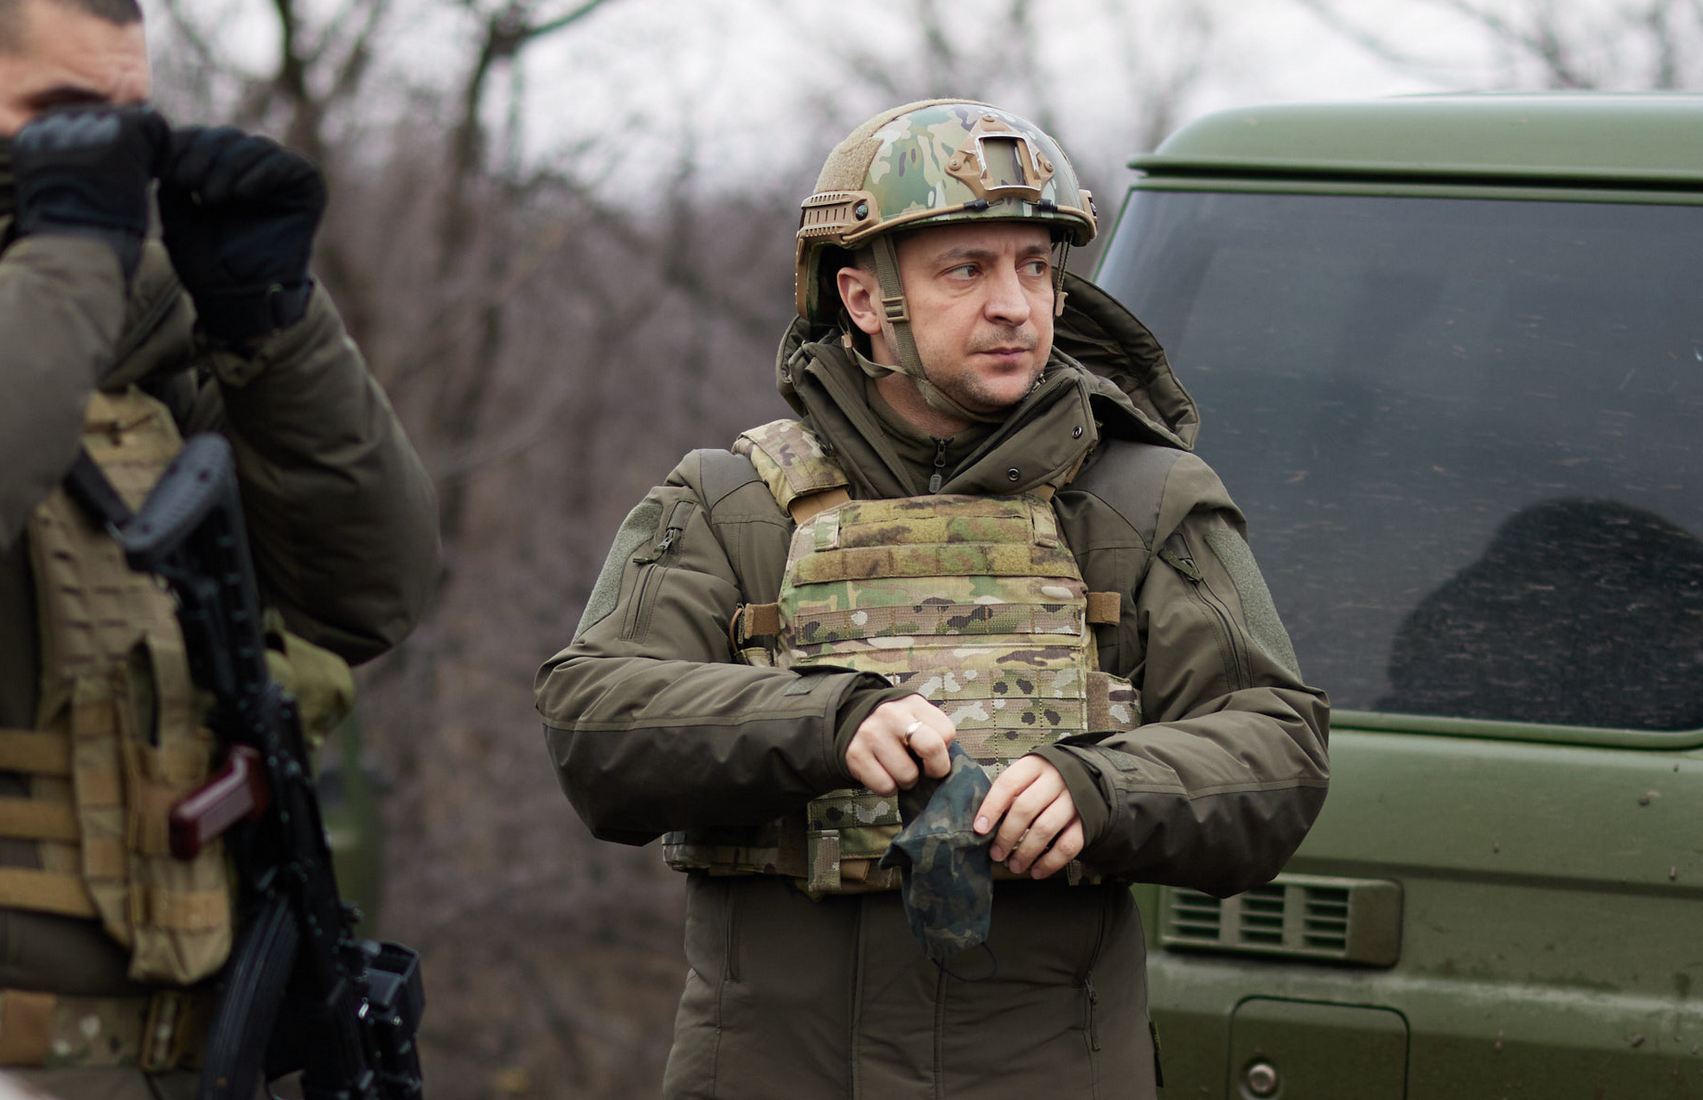 НАТО, Россия и дефицит ресурсов: что в новой военной стратегии Украины